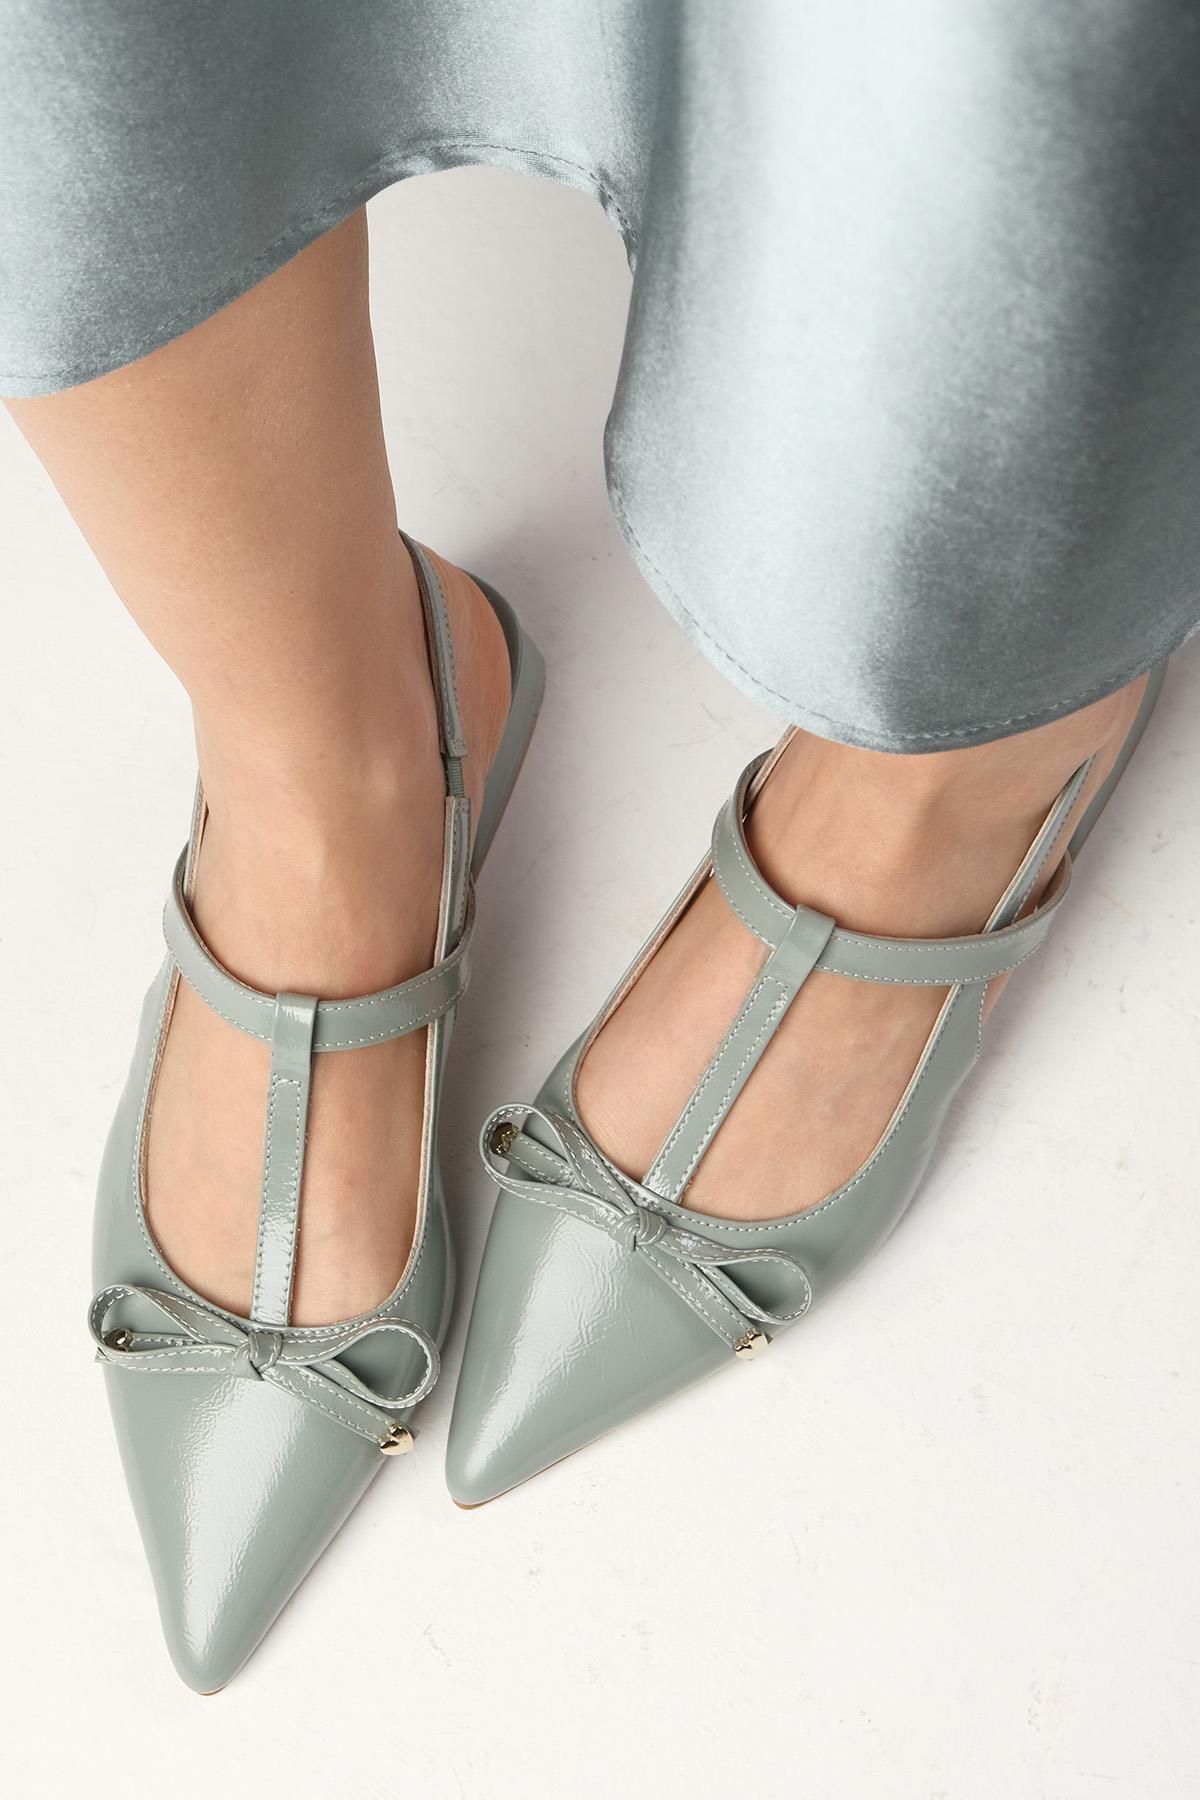 Mio Gusto Tulip Hakiki Rugan Nil Yeşili Renk Arkası Açık Kadın Kısa Topuklu Ayakkabı